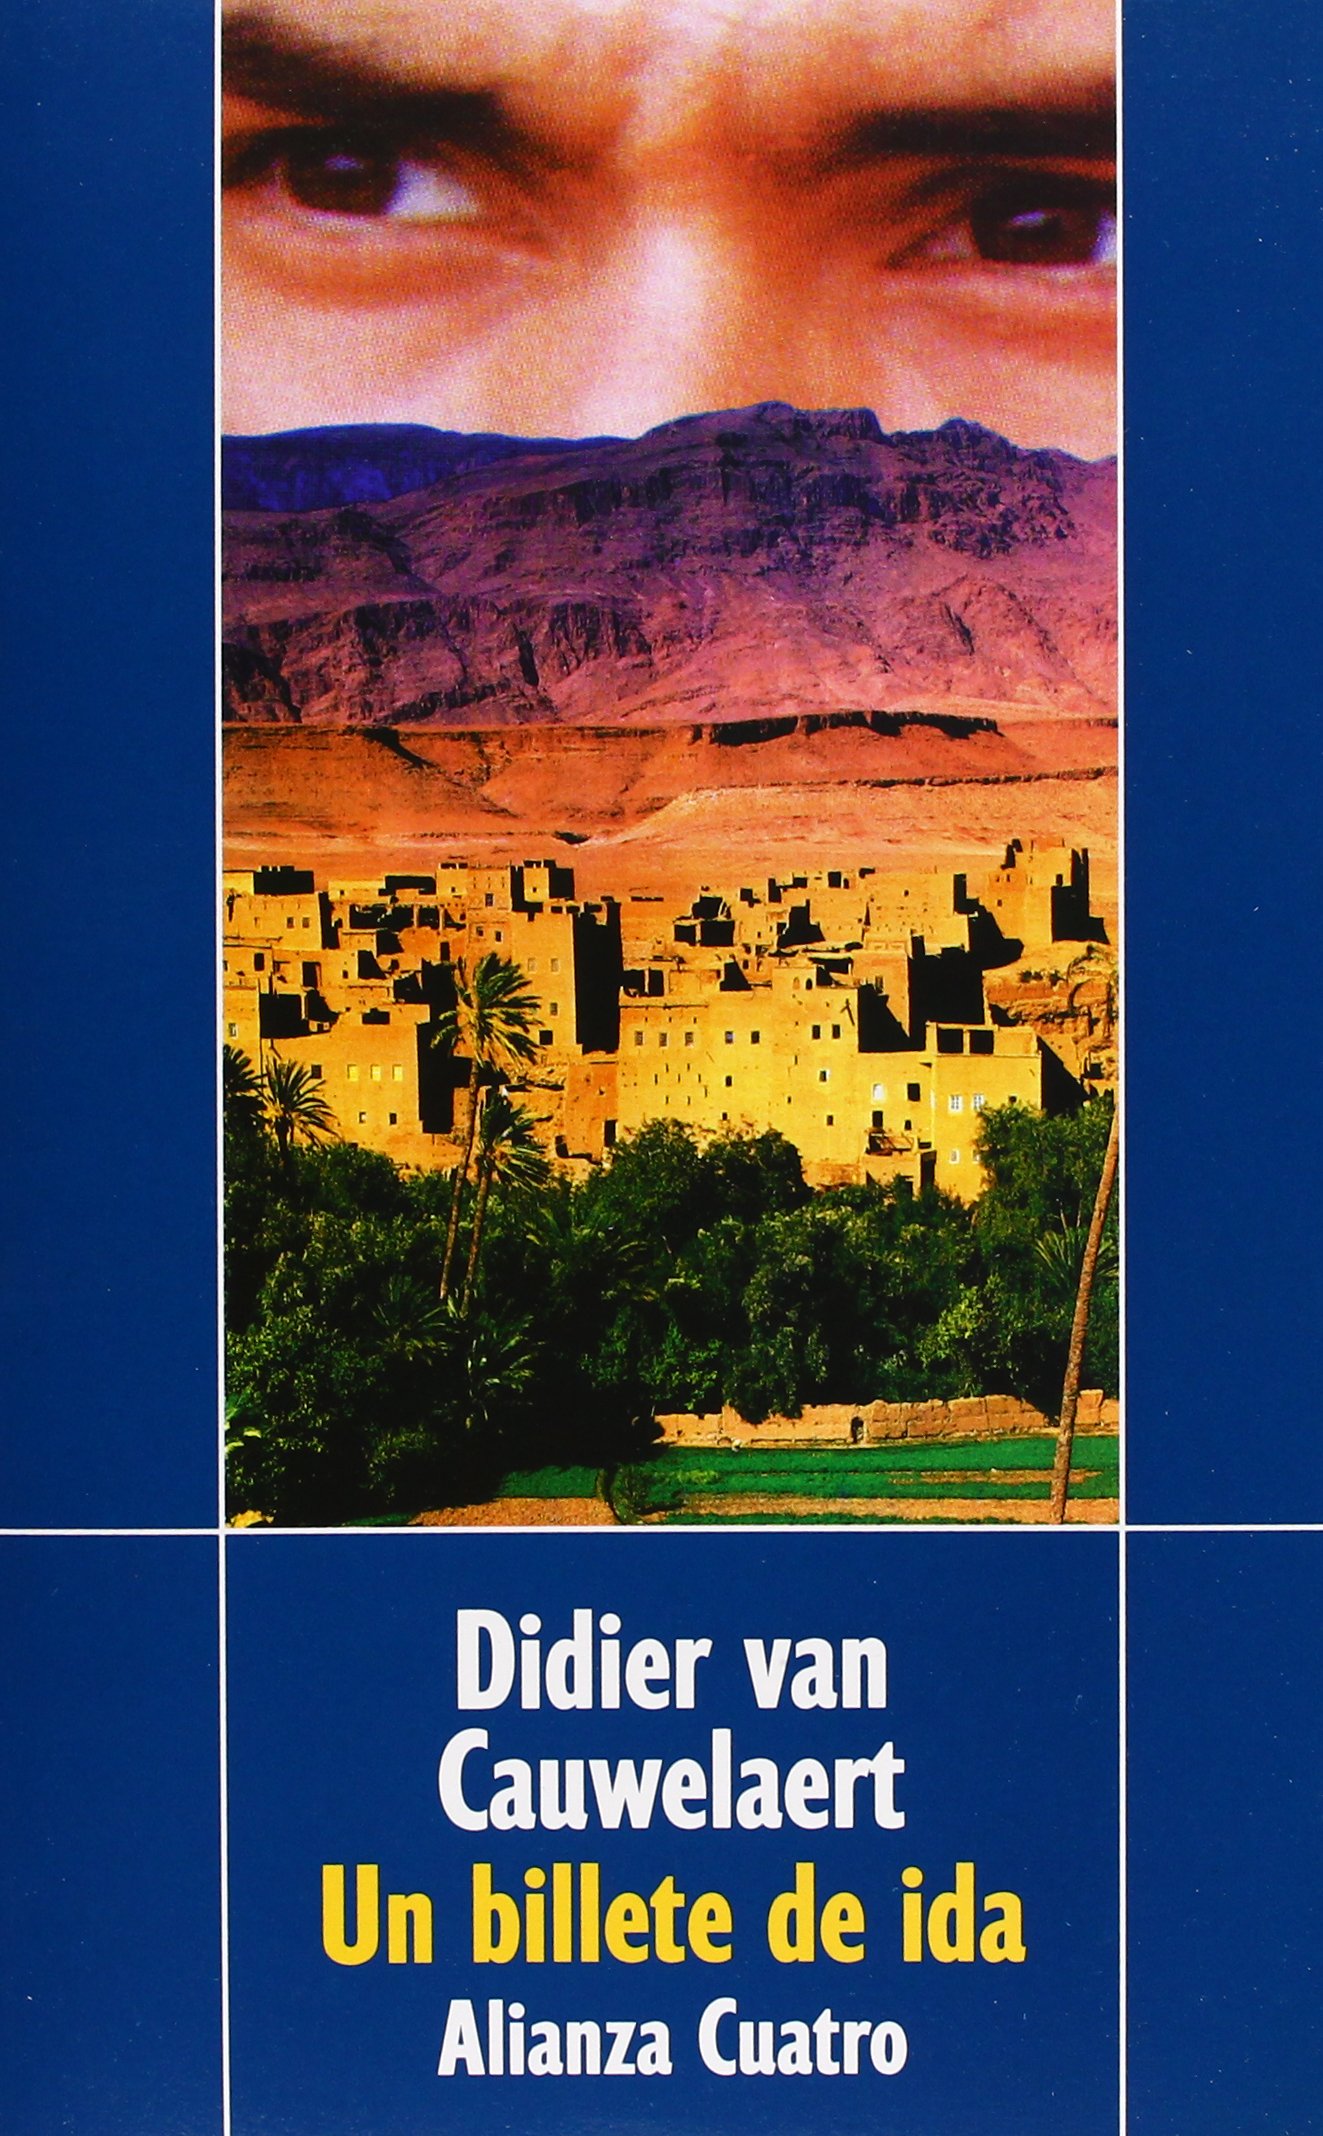 Didier van Cauwelaert es uno de los más importantes escritores del panorama literario francés actual. Su amplia obra ha sido traducida a una veintena de lenguas.